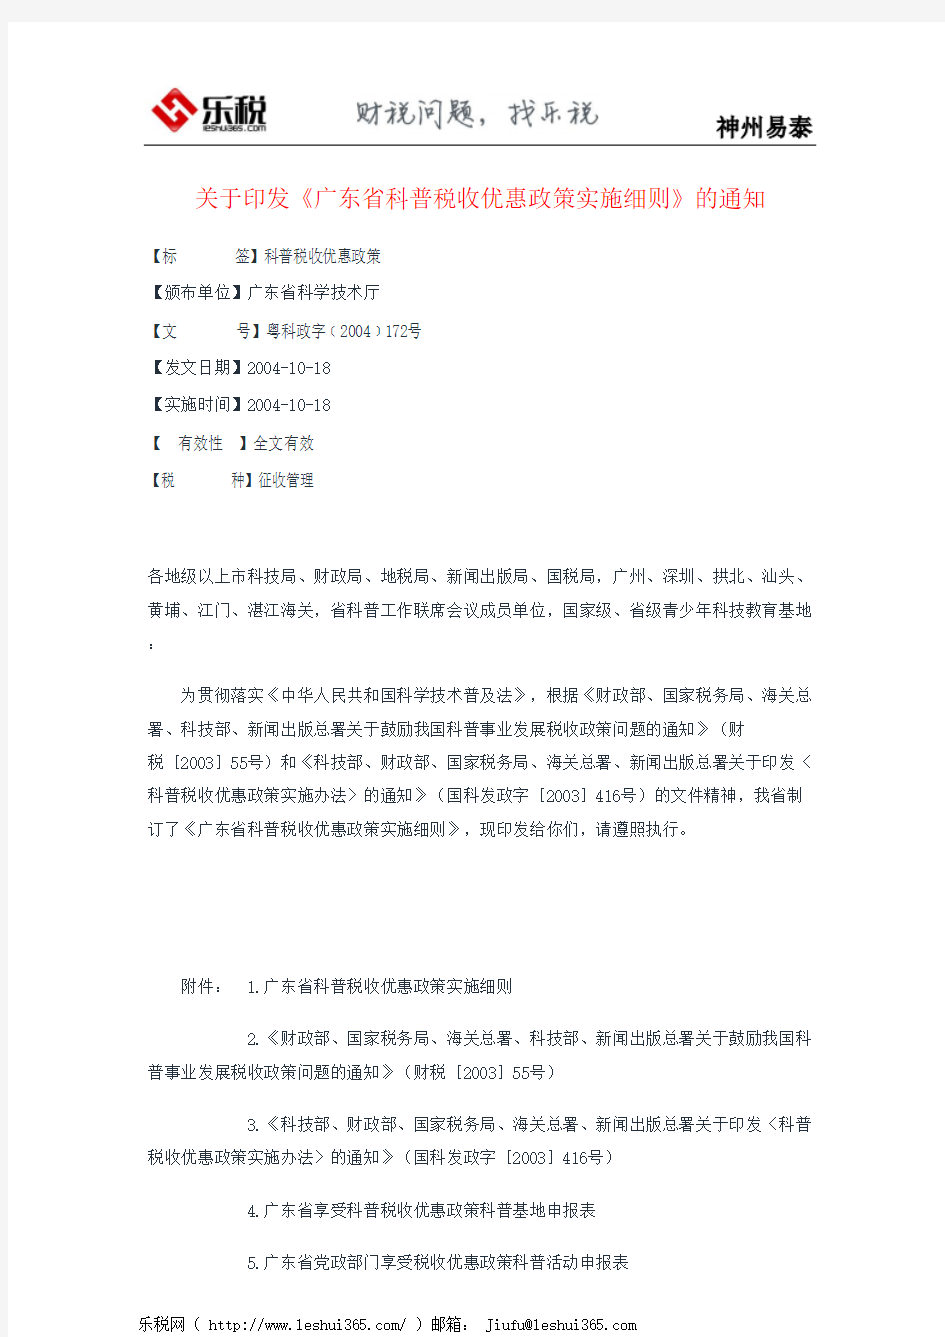 关于印发《广东省科普税收优惠政策实施细则》的通知